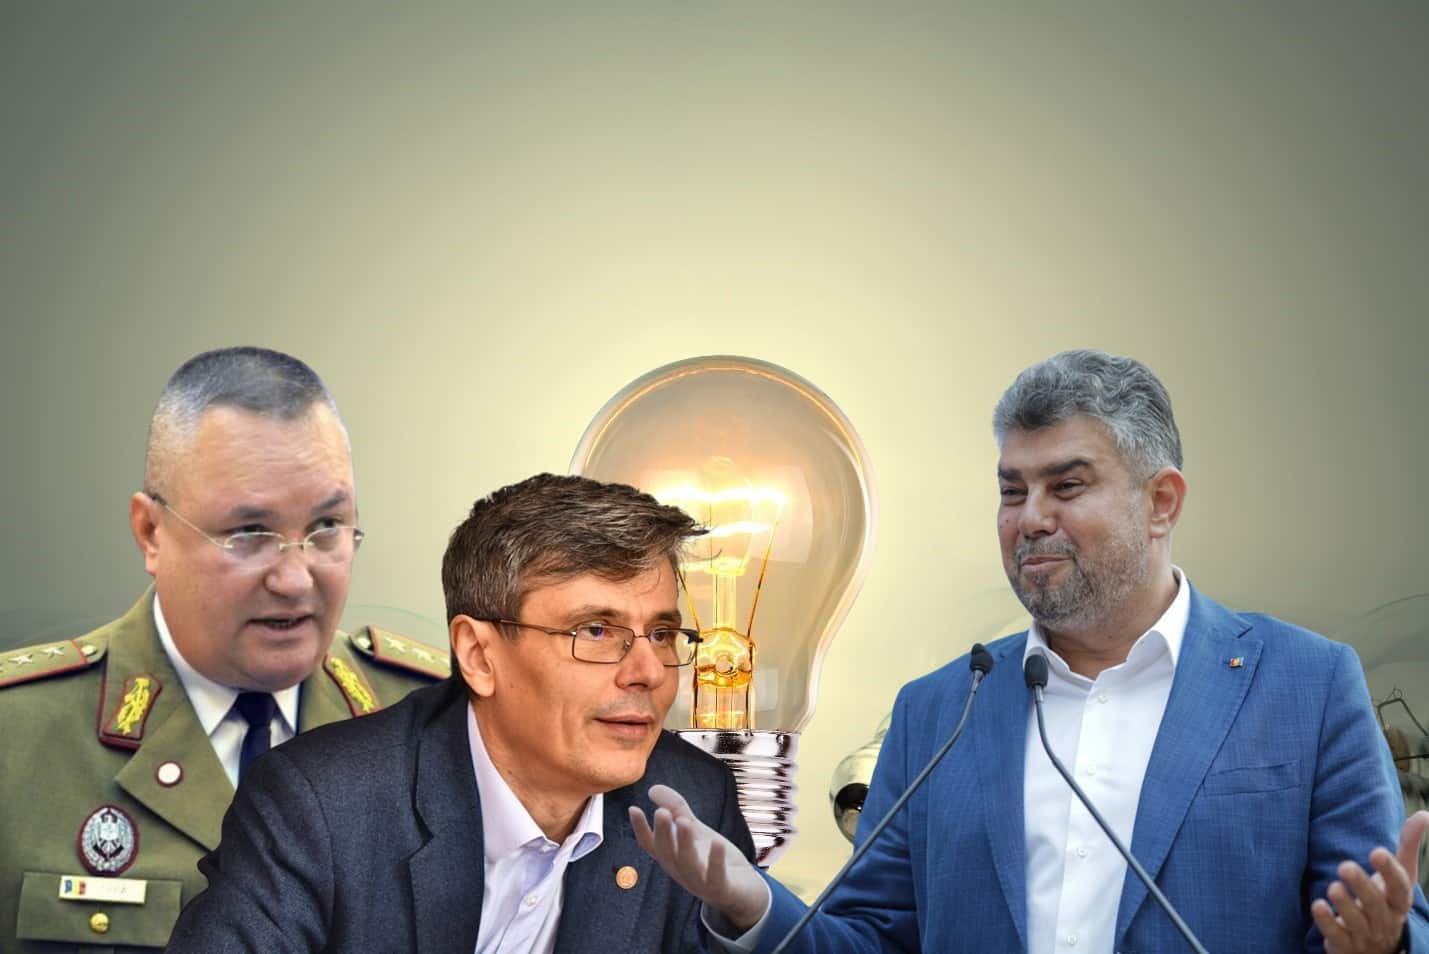 Cum sabotează Virgil Popescu un Mega Proiect energetic – Serbia insistă să facă cu România Porțile de Fier III – CRITICII.RO